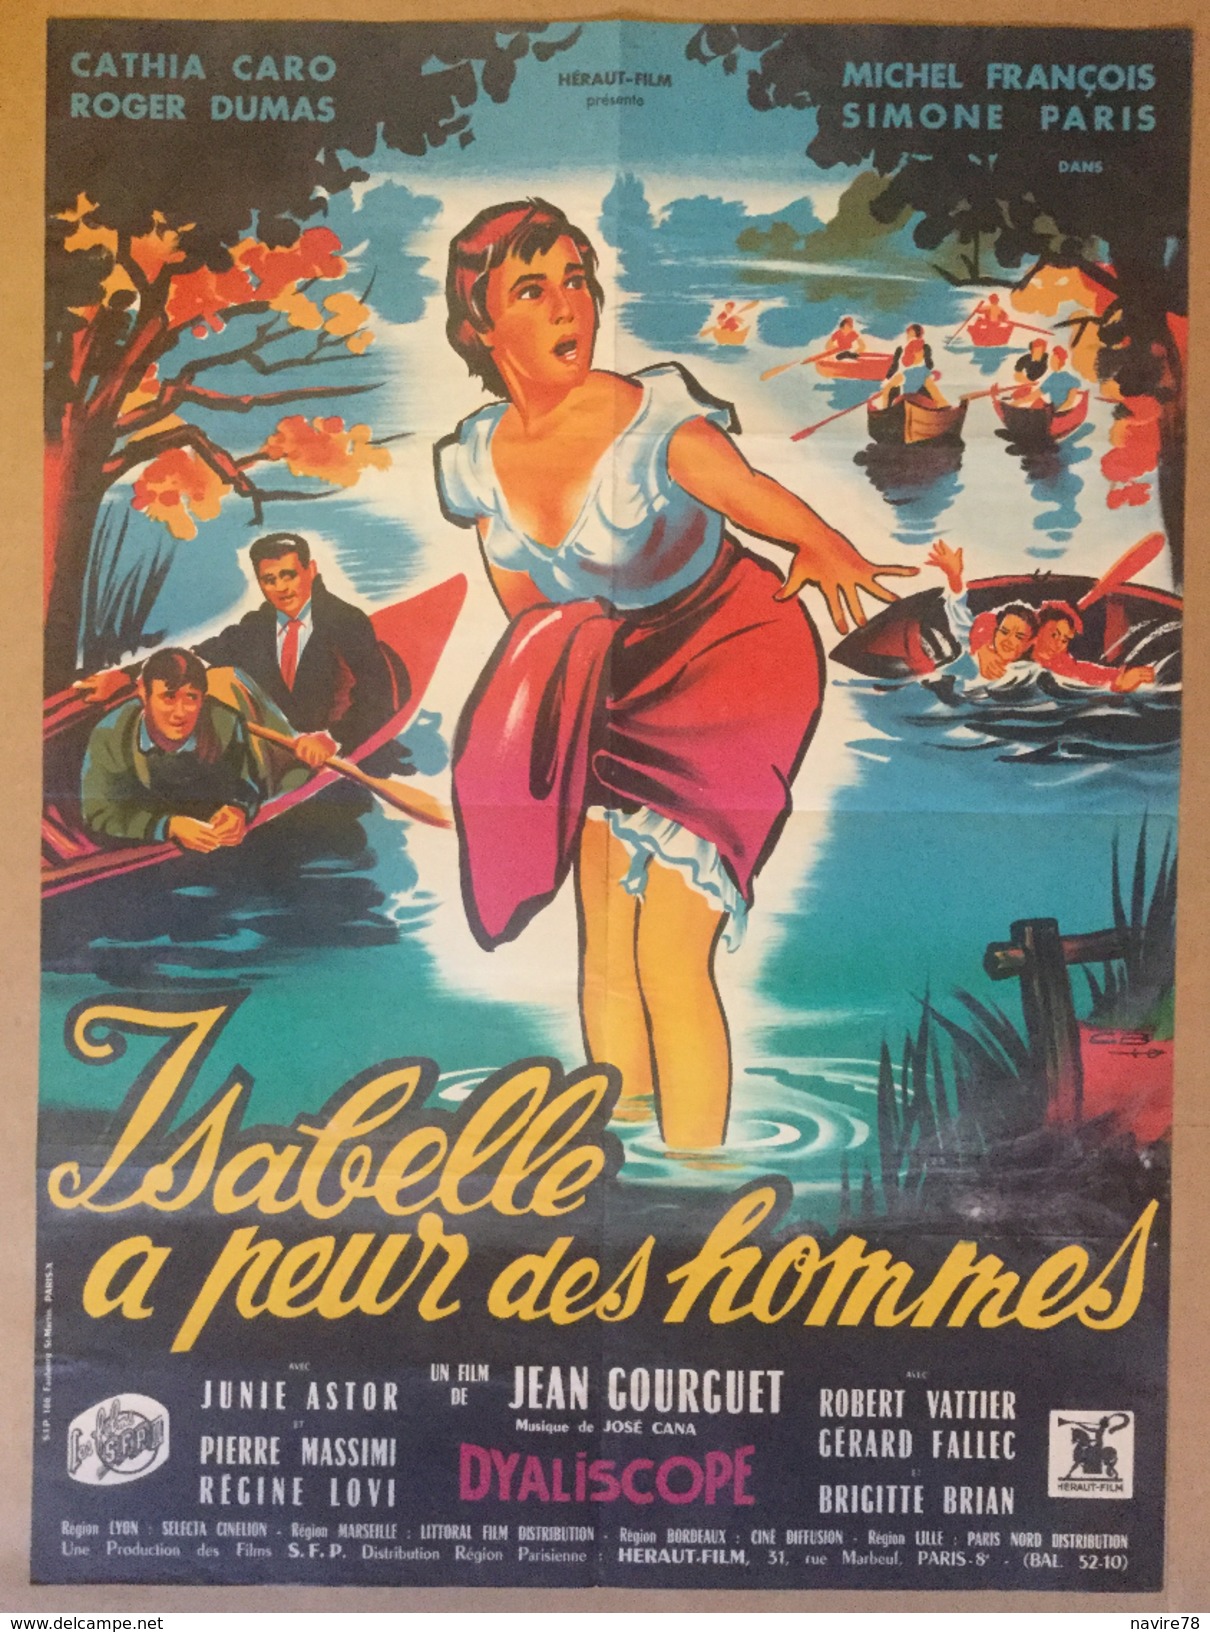 Affiche Cinéma Originale Du Film ISABELLE A PEUR DES HOMMES De JEAN GOURGUET 1957 Avec ROGER DUMAS SIMONE PARIS - Affiches & Posters